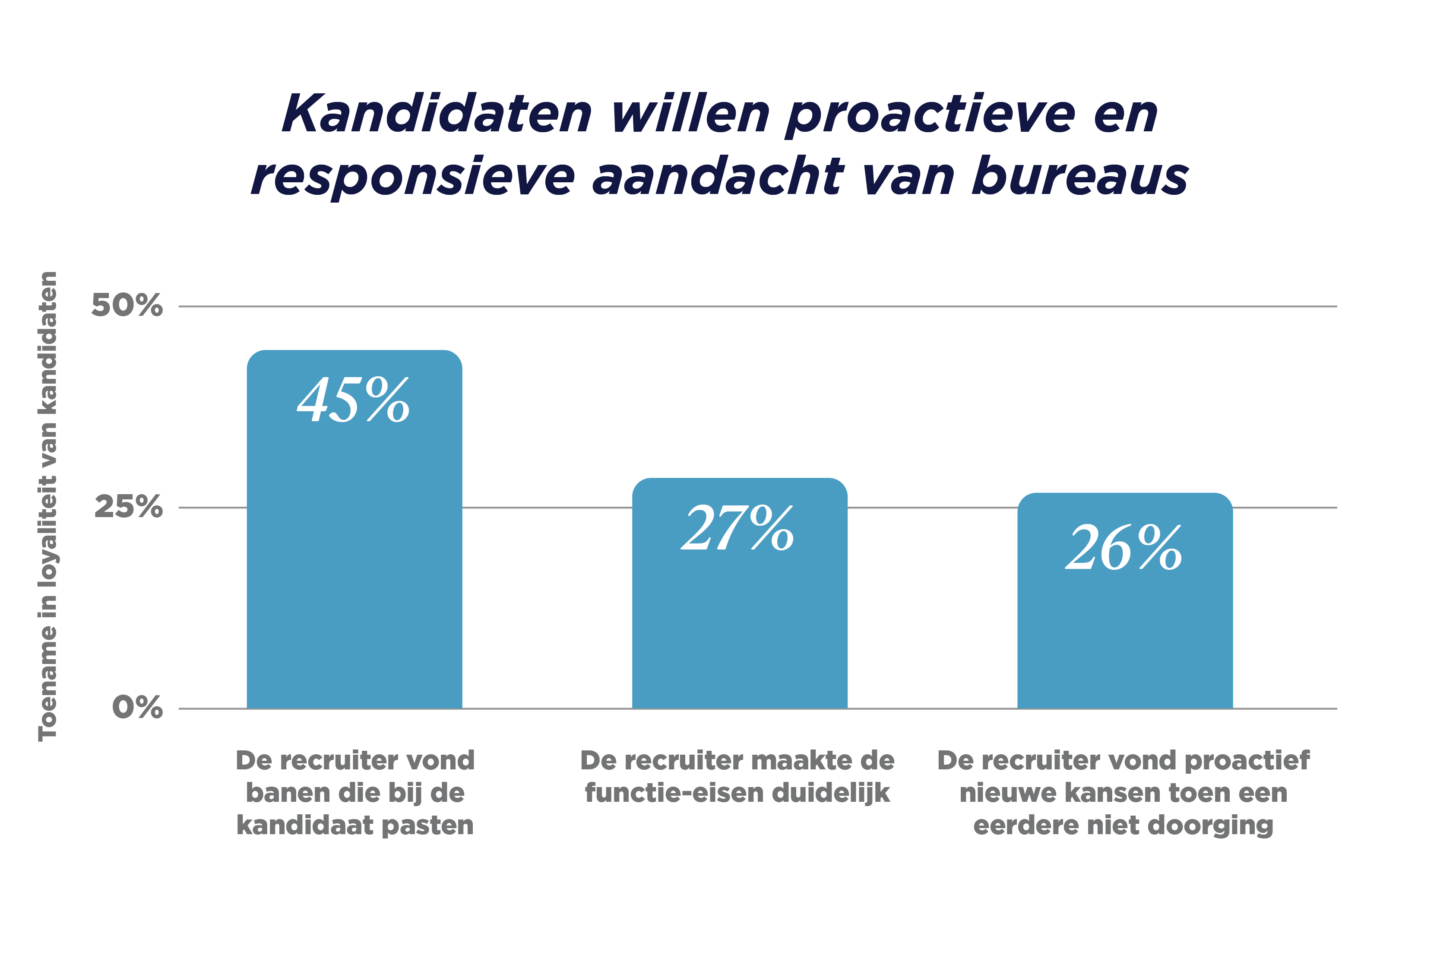 GRID_Talent Trends Report 2023_Benelux Graphs_Kandidaten willen proactieve en responsieve aandacht van bureaus_V1